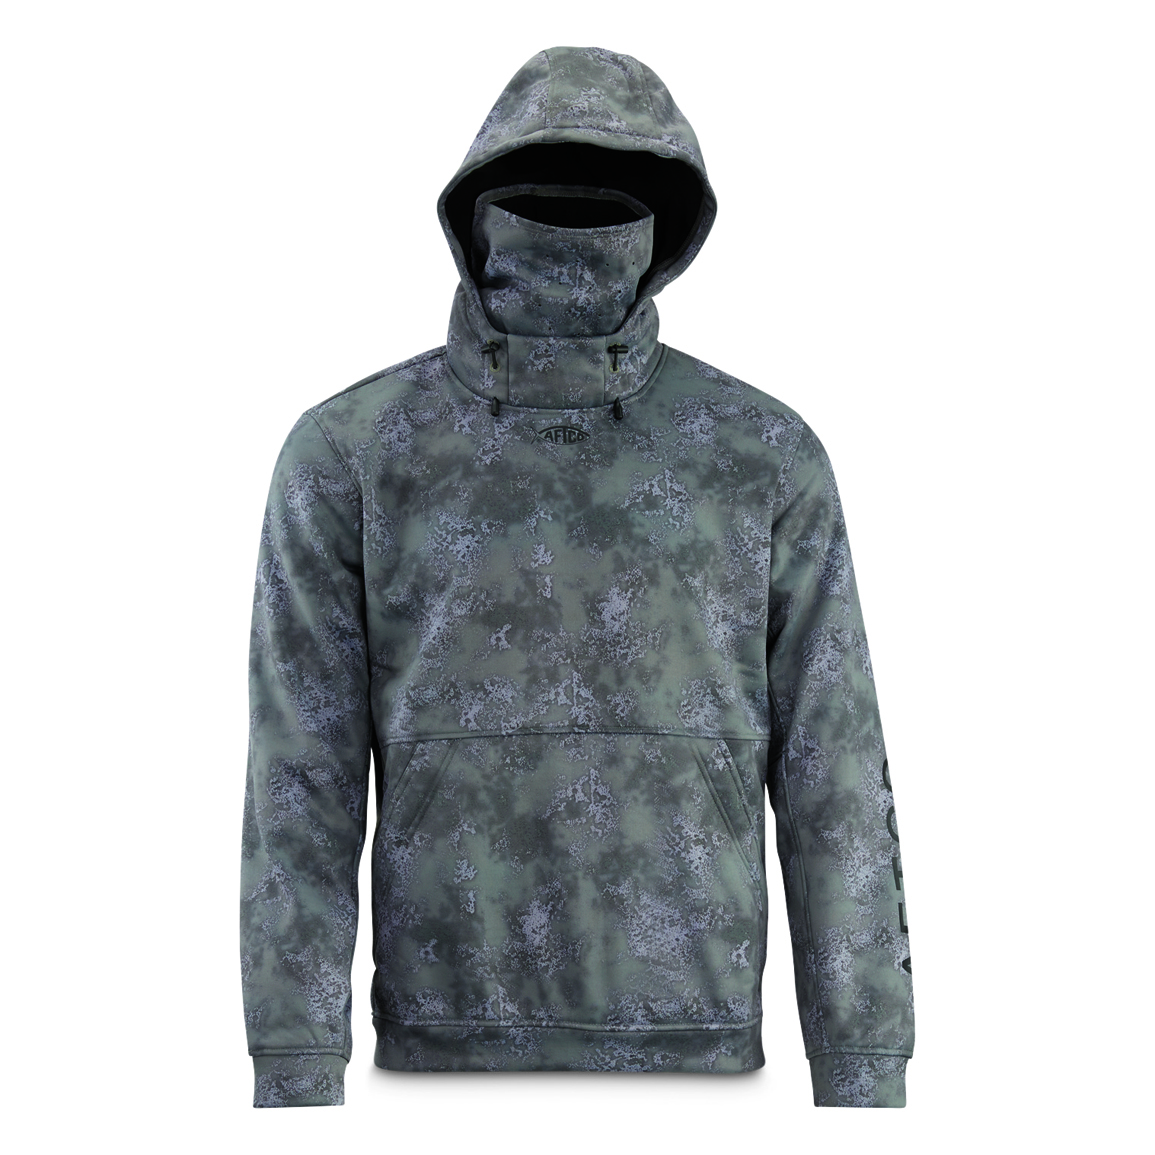 AFTCO Men's Reaper Tactical Sweatshirt, Camo - 731837, Sweatshirts & Hoodies  at Sportsman's Guide